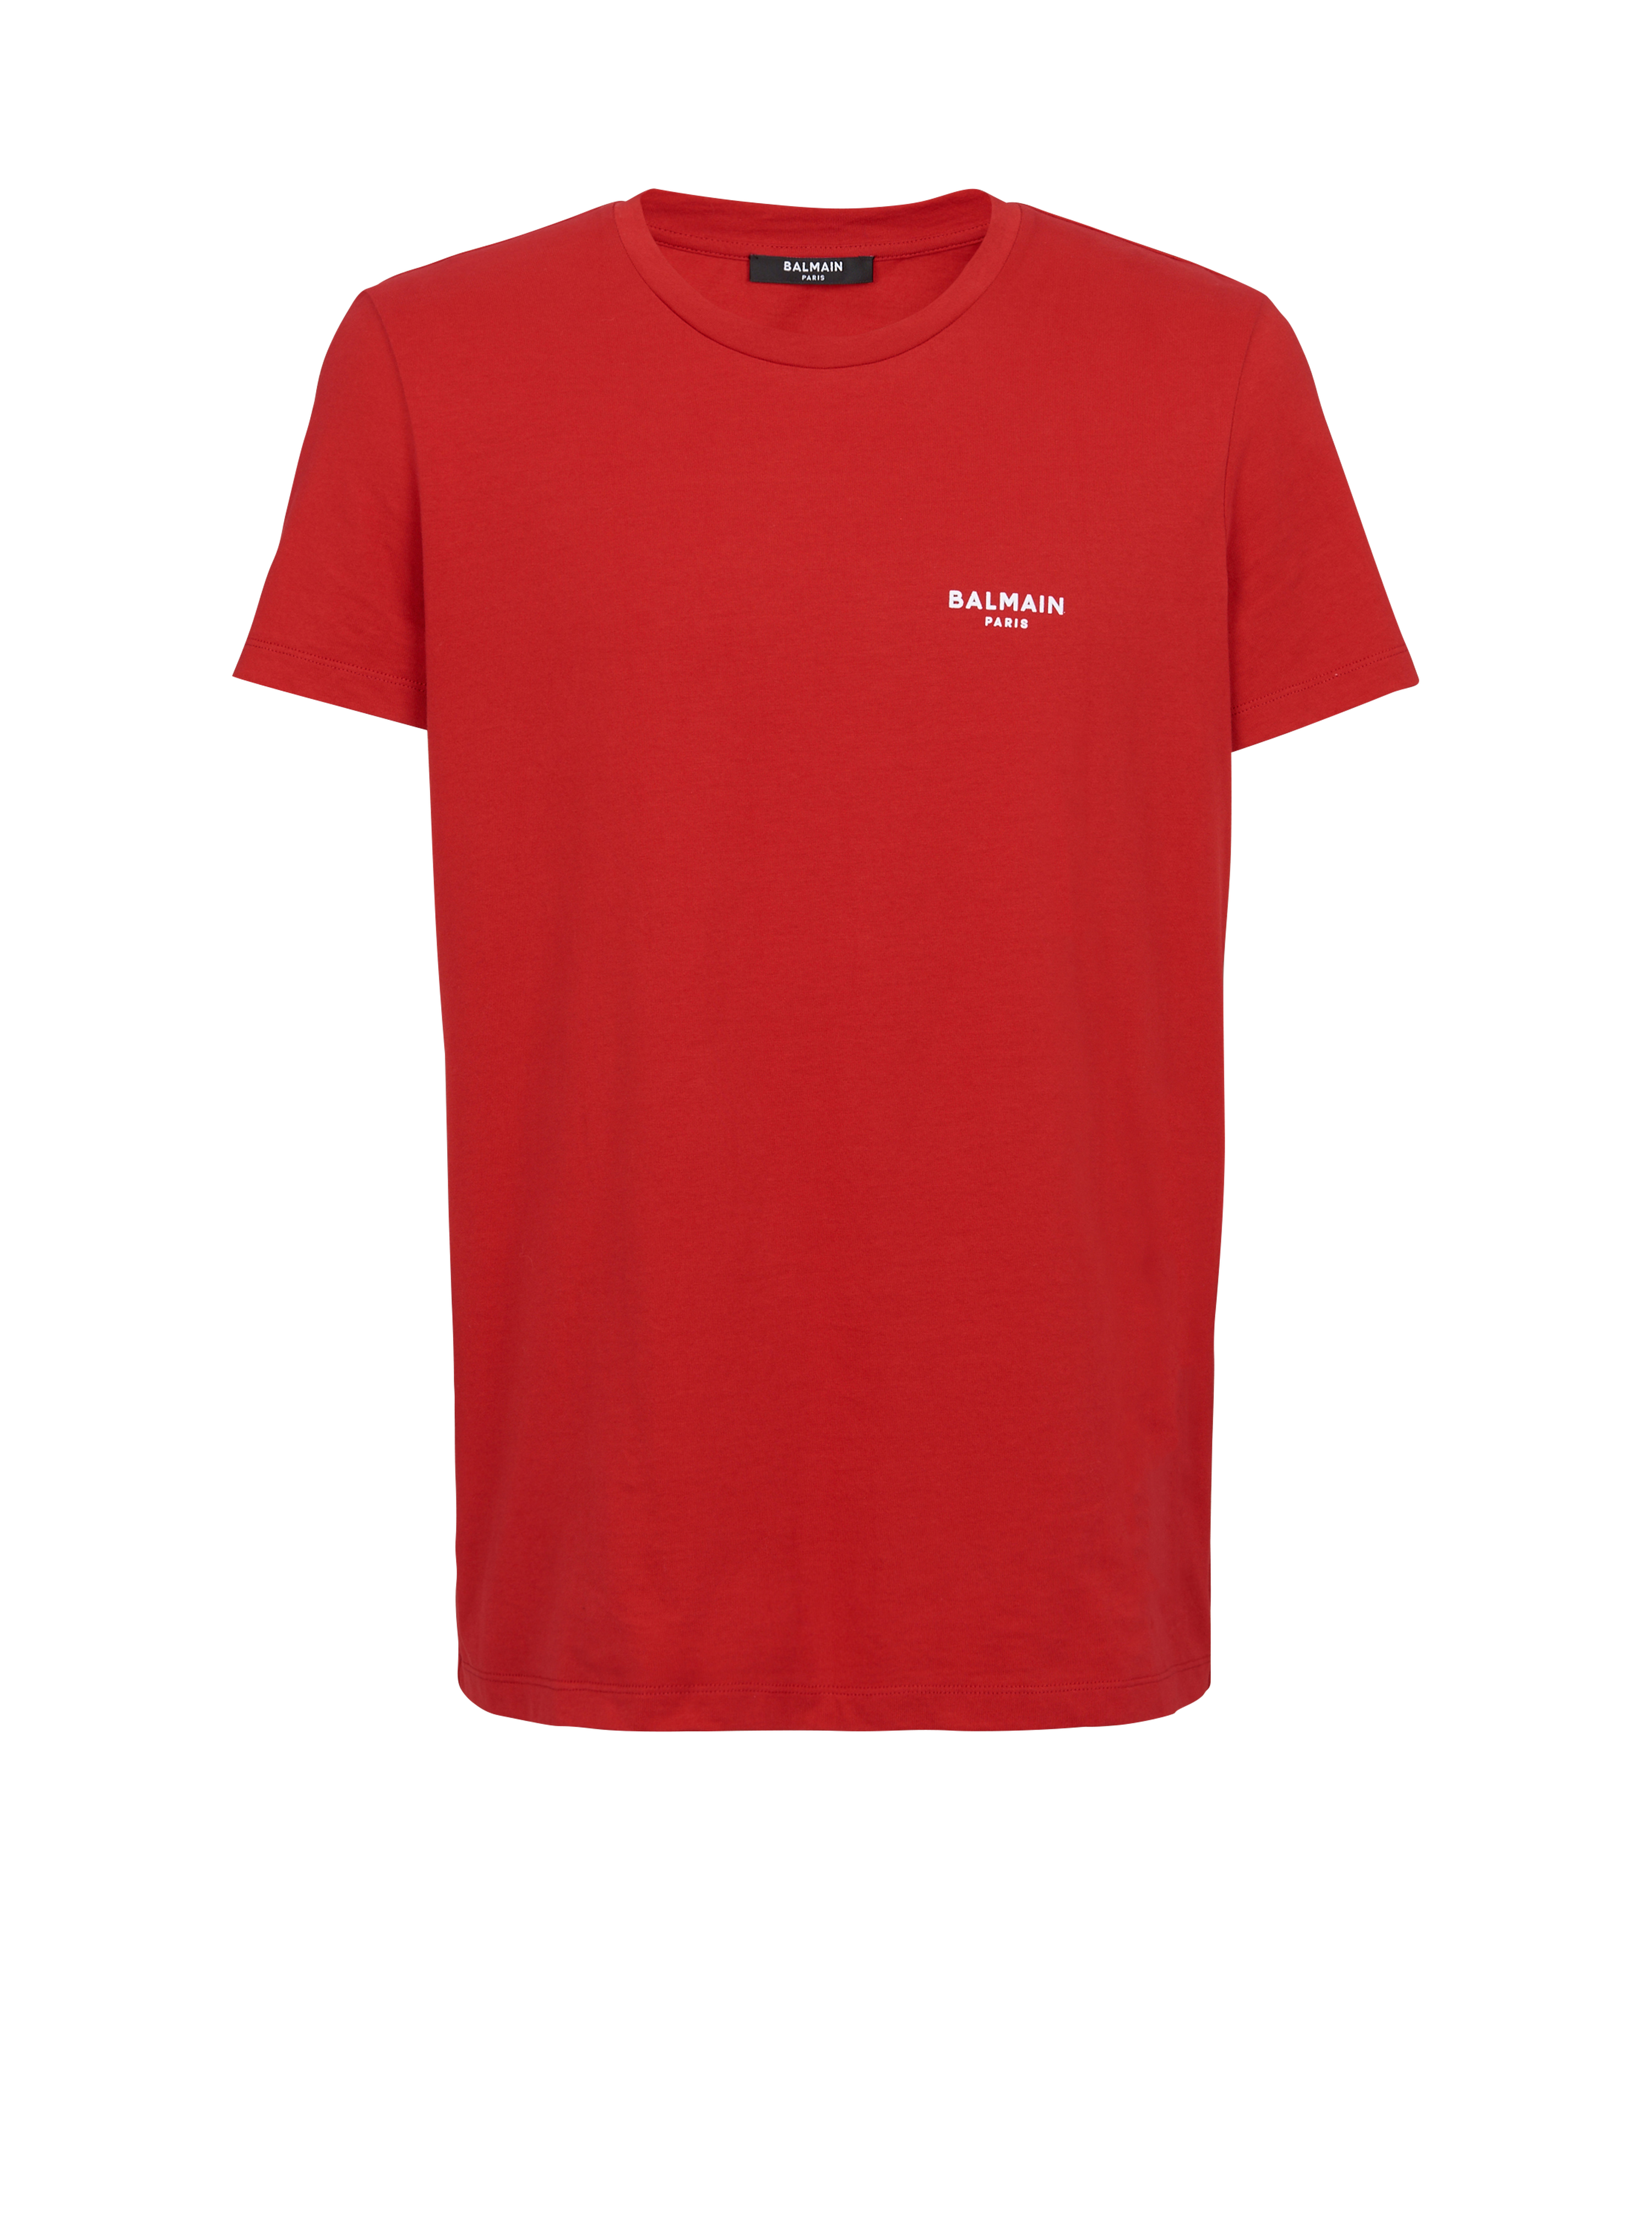 T-shirt in cotone eco-design con piccolo logo Balmain floccato, rosso